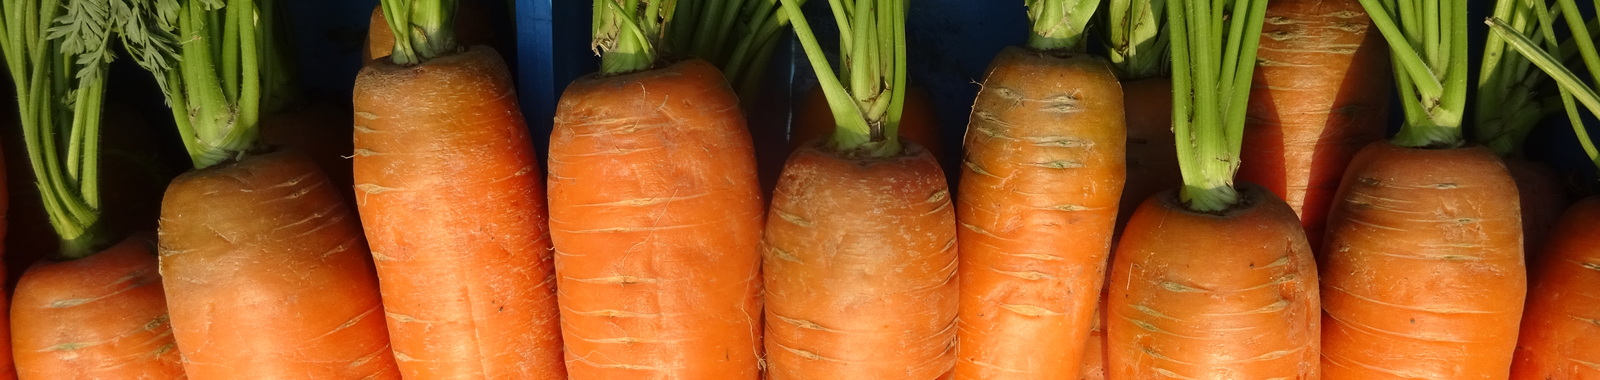 Porkkanan lannoitus